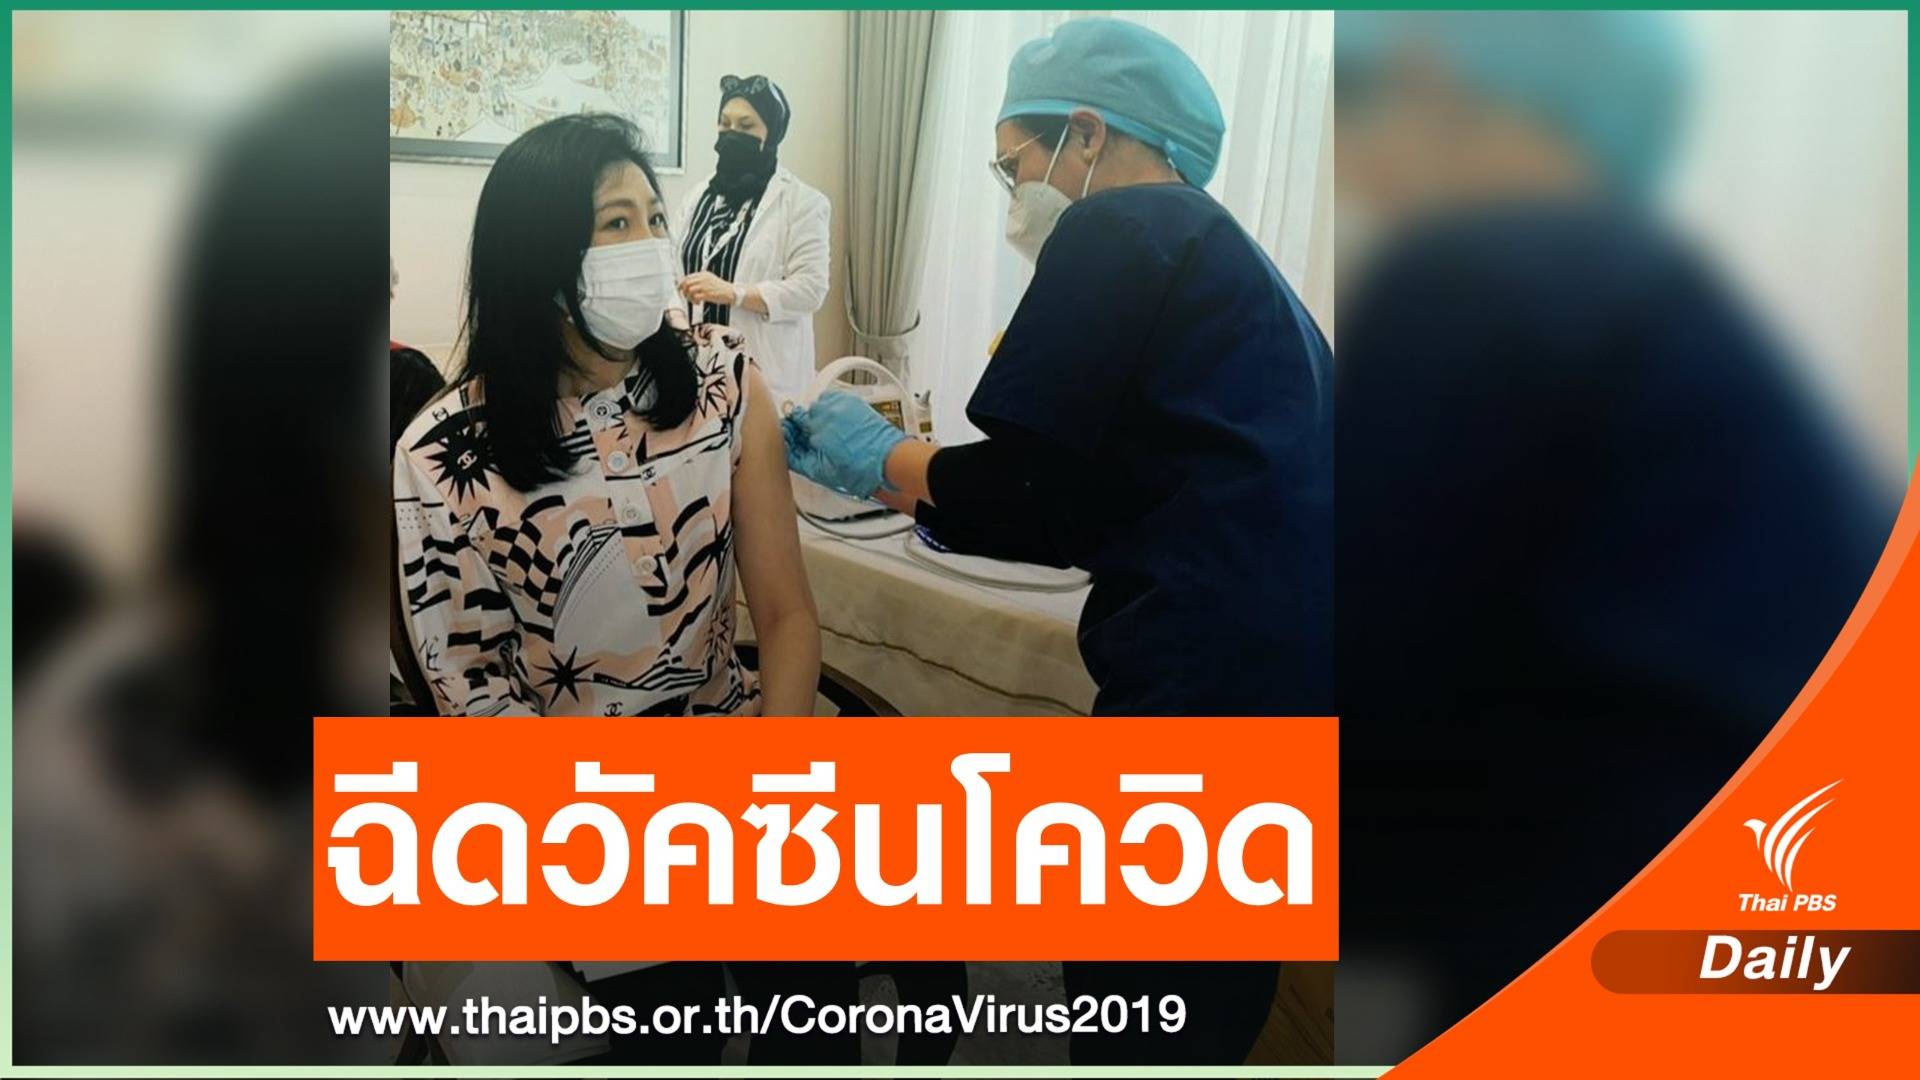 "ยิ่งลักษณ์" ฉีดวัคซีน COVID-19 หวังคนไทยมีโอกาสฉีดเร็วๆ นี้